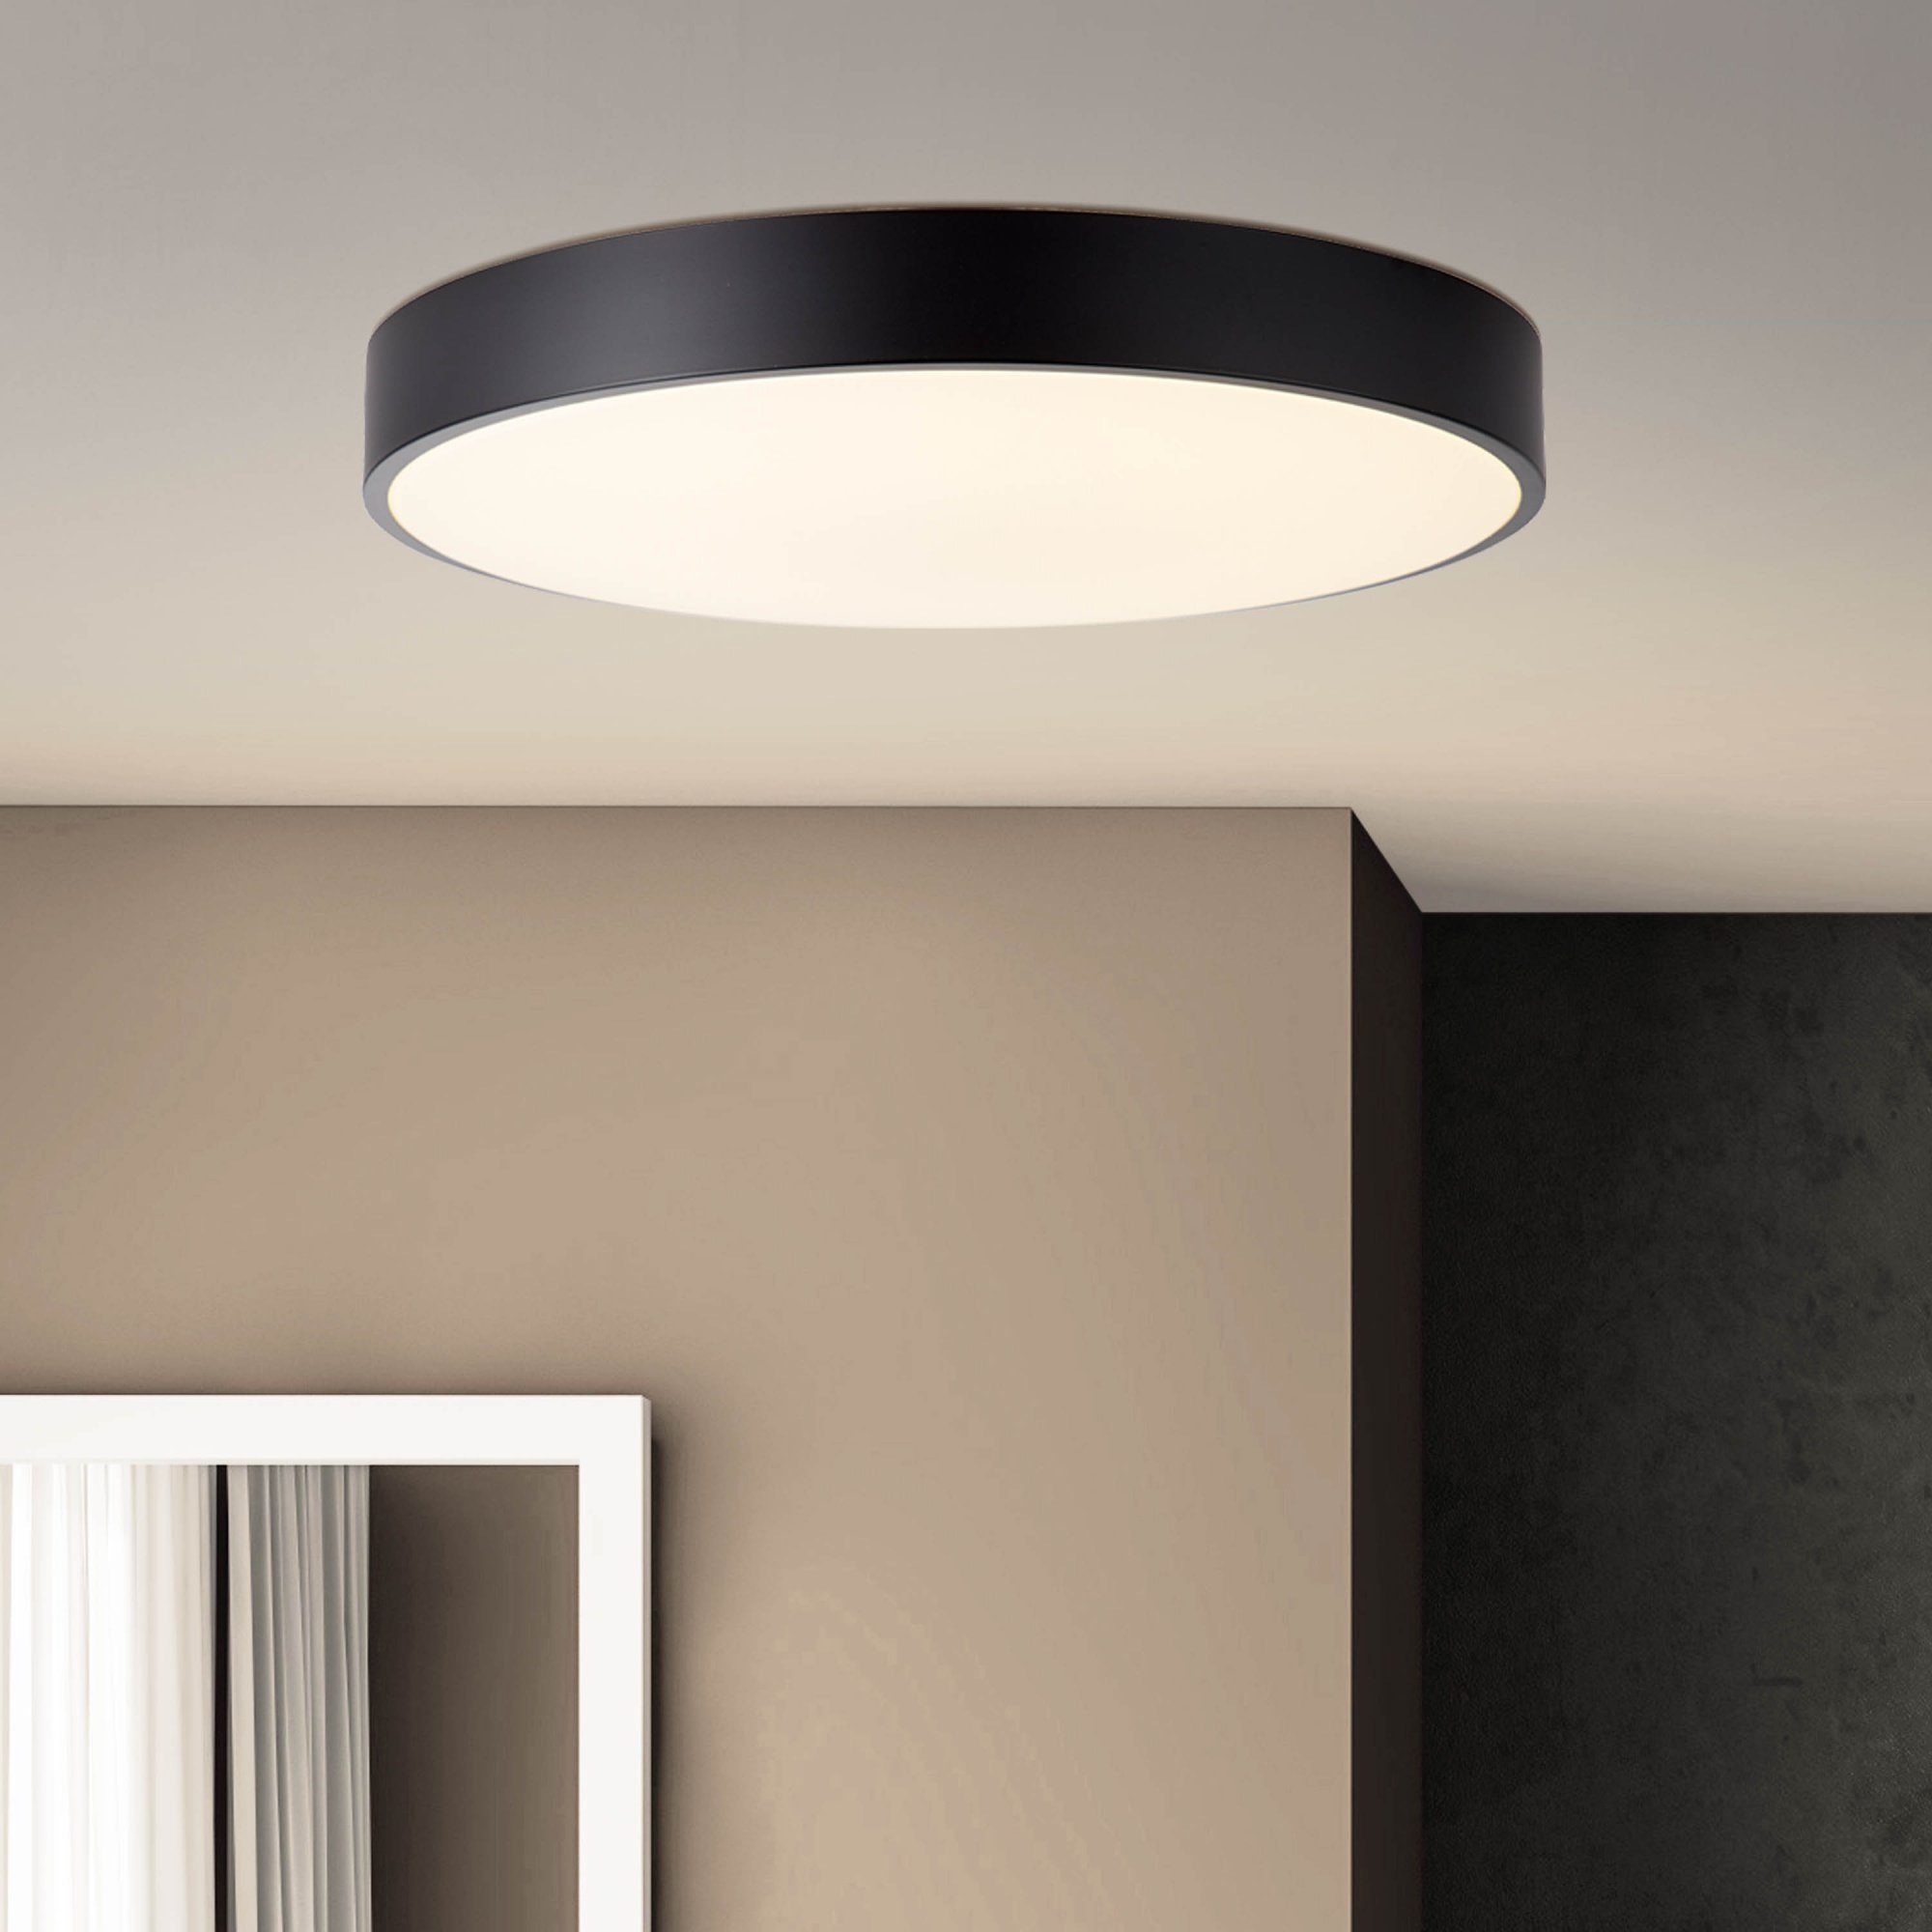 Lightbox LED Deckenleuchte, LED fest integriert, warmweiß - kaltweiß, Ø 49 cm, 6800 lm, dimmbar, 3000-6500K, Metall/Kunststoff, schwarz/weiß